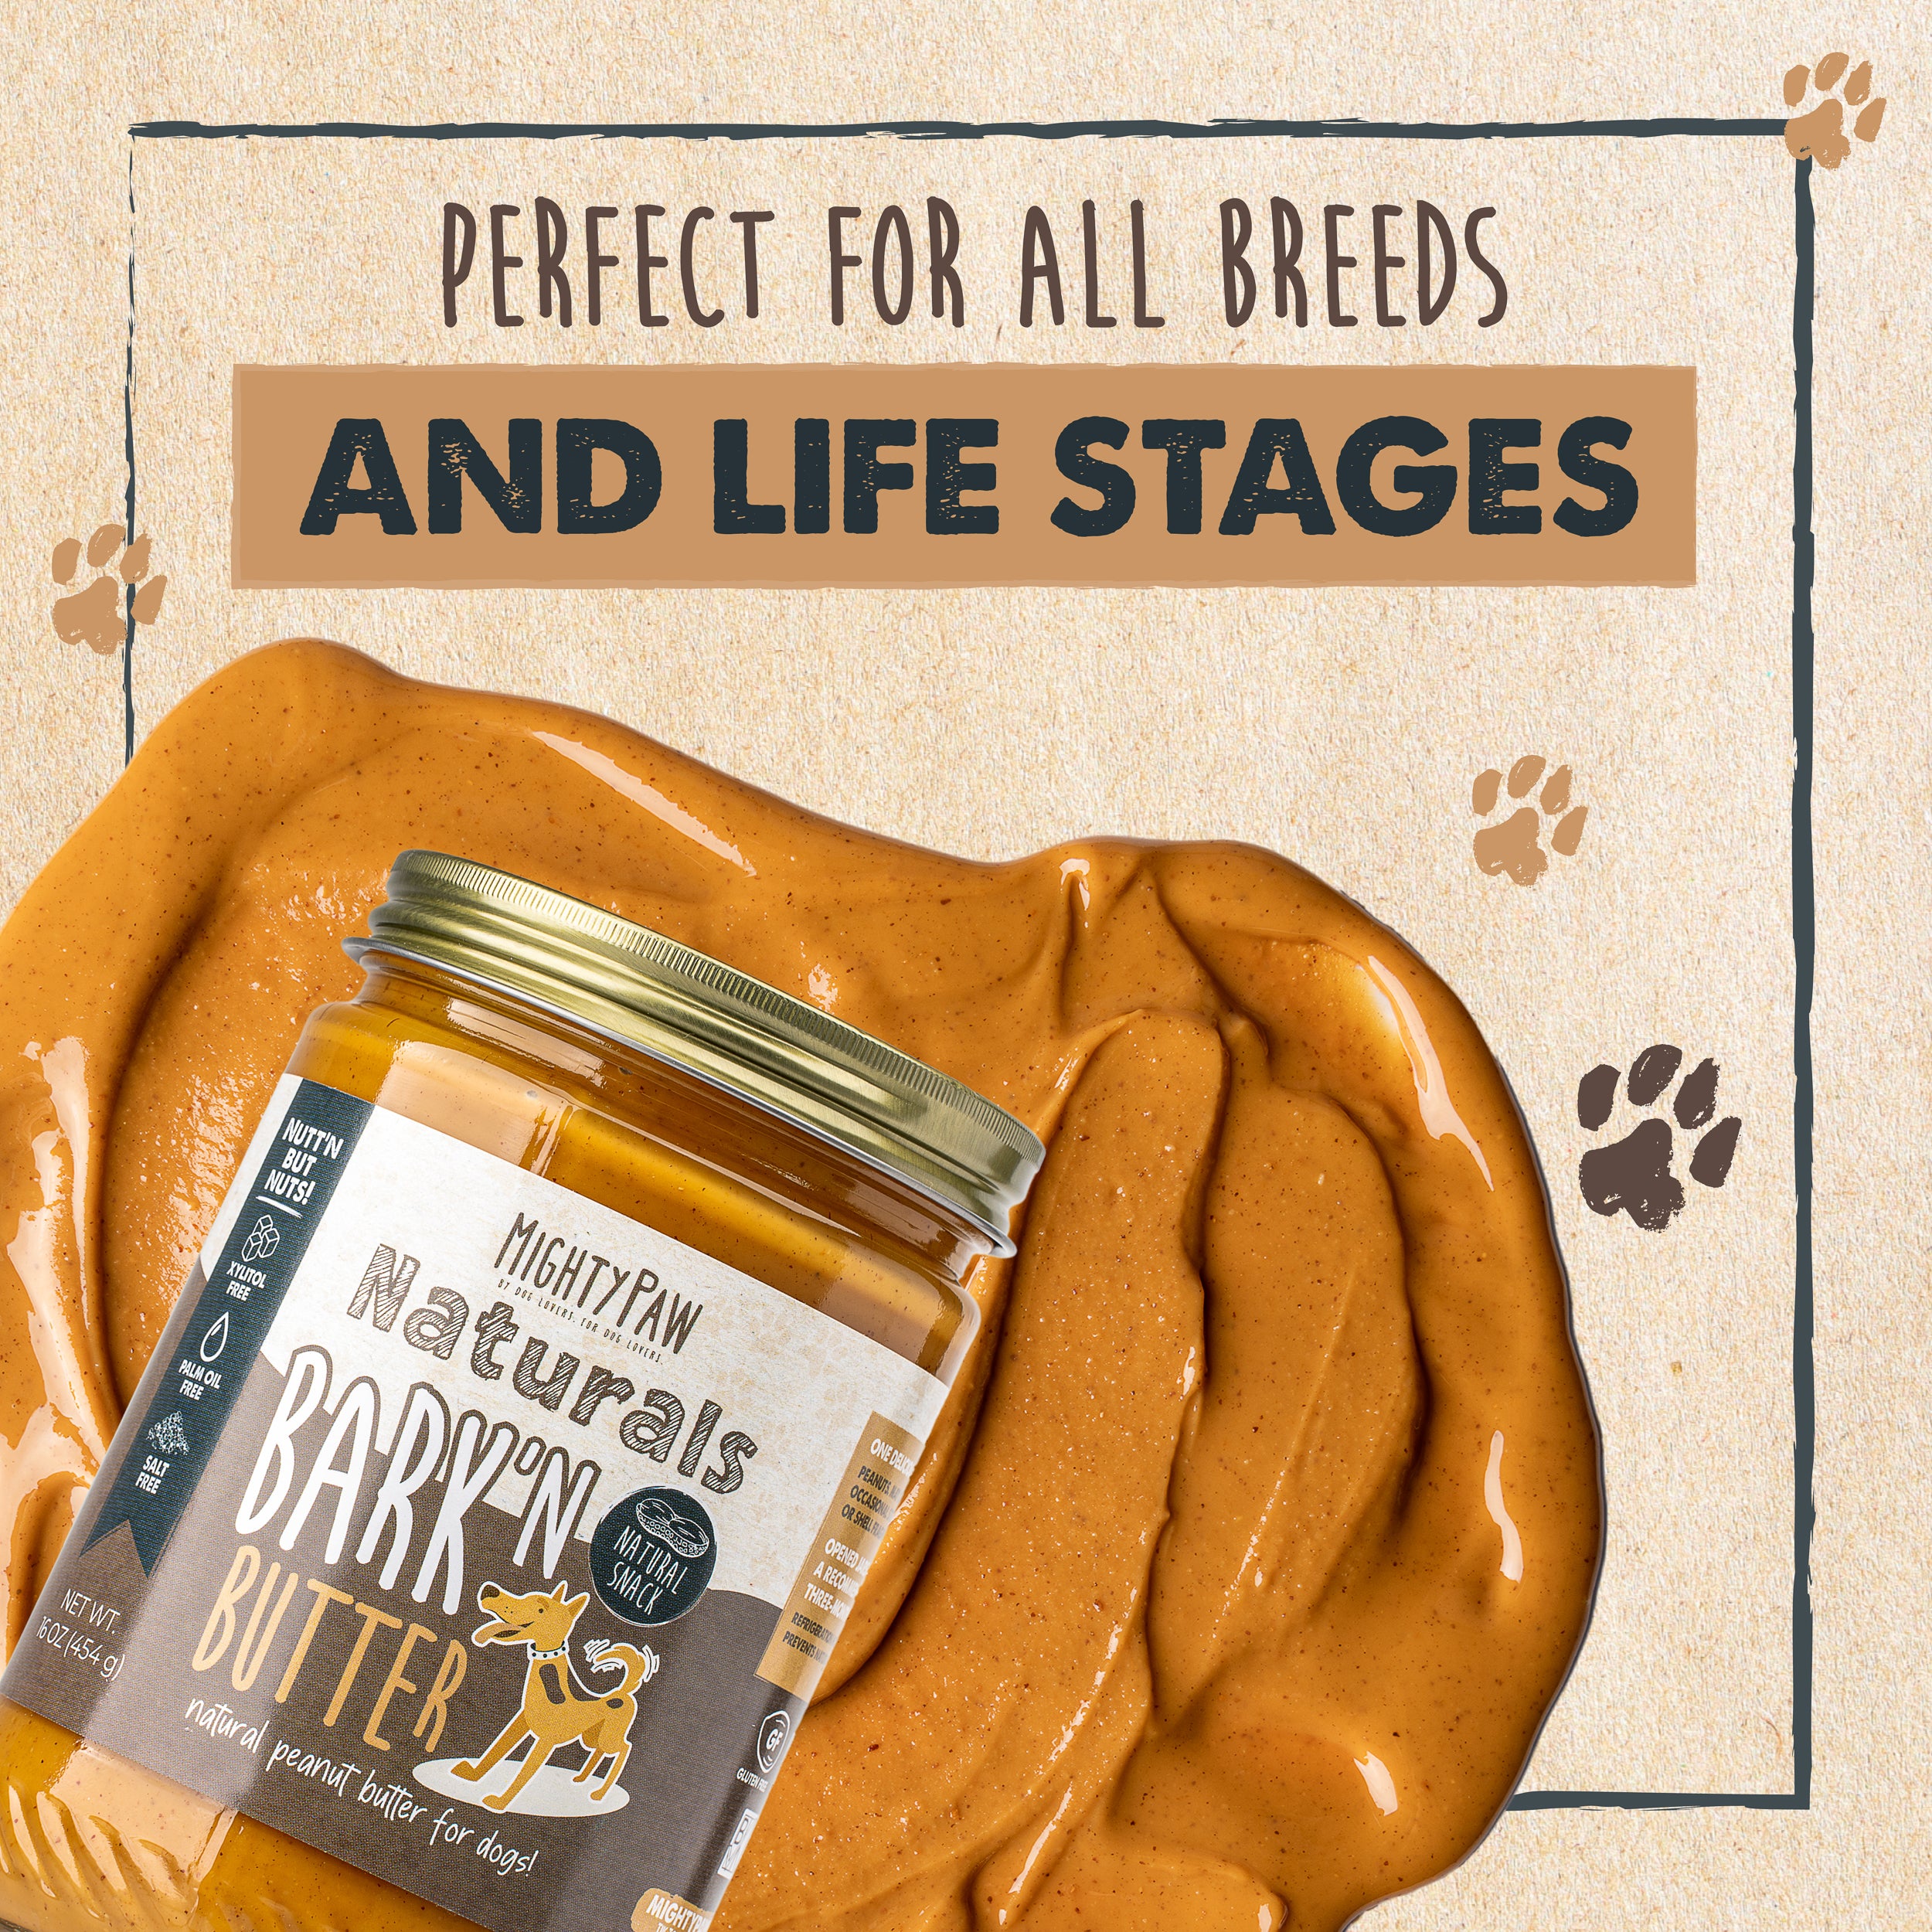 Bark'n Butter Peanut Butter for Dogs (2 Pack)